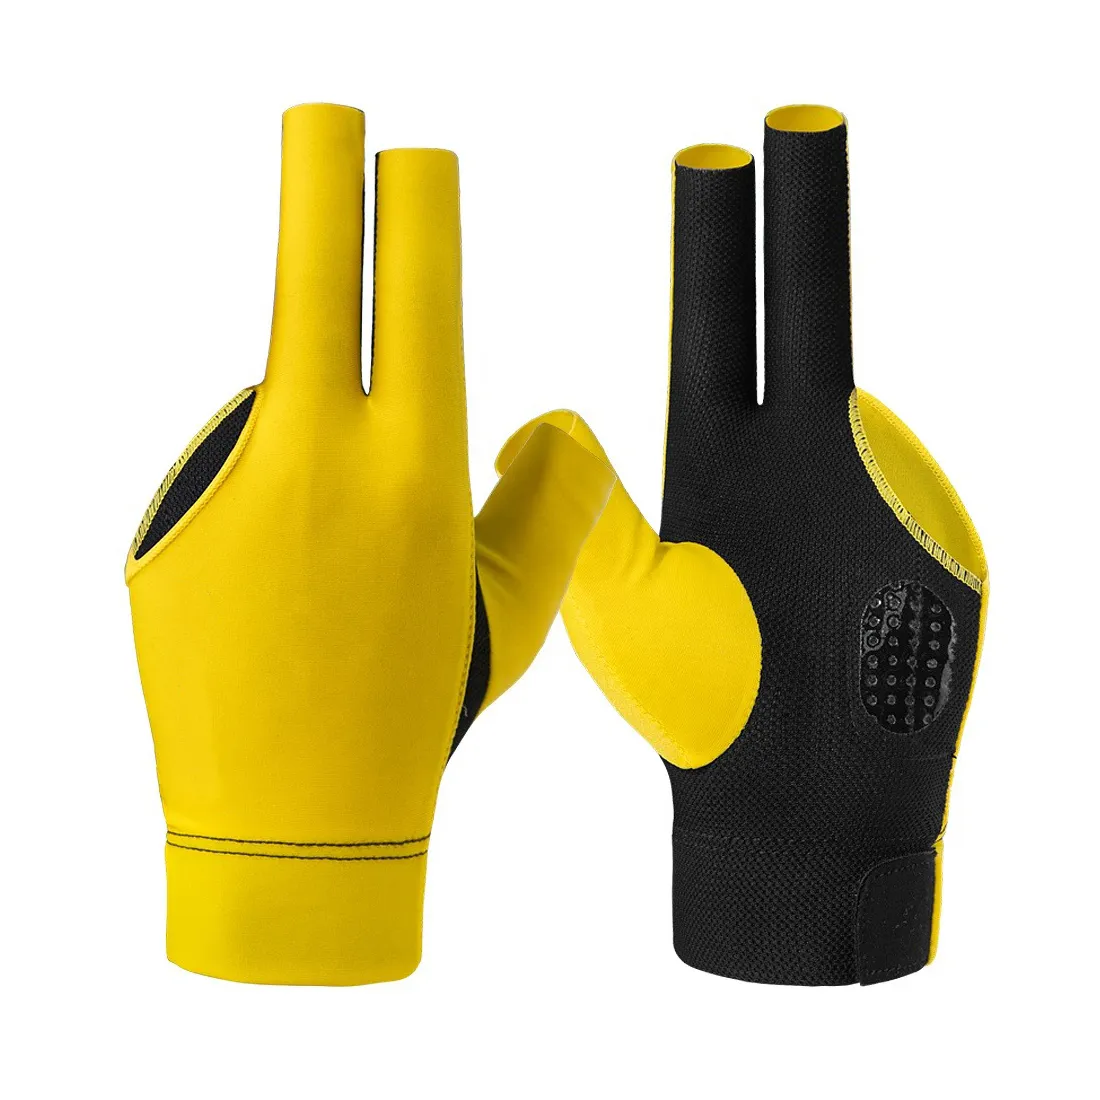 Benutzer definierte gelbe Farbe Billard Sport handschuhe rutsch feste Pad 3 Finger Pool Cue Snooker Handschuhe für die linke oder rechte Hand